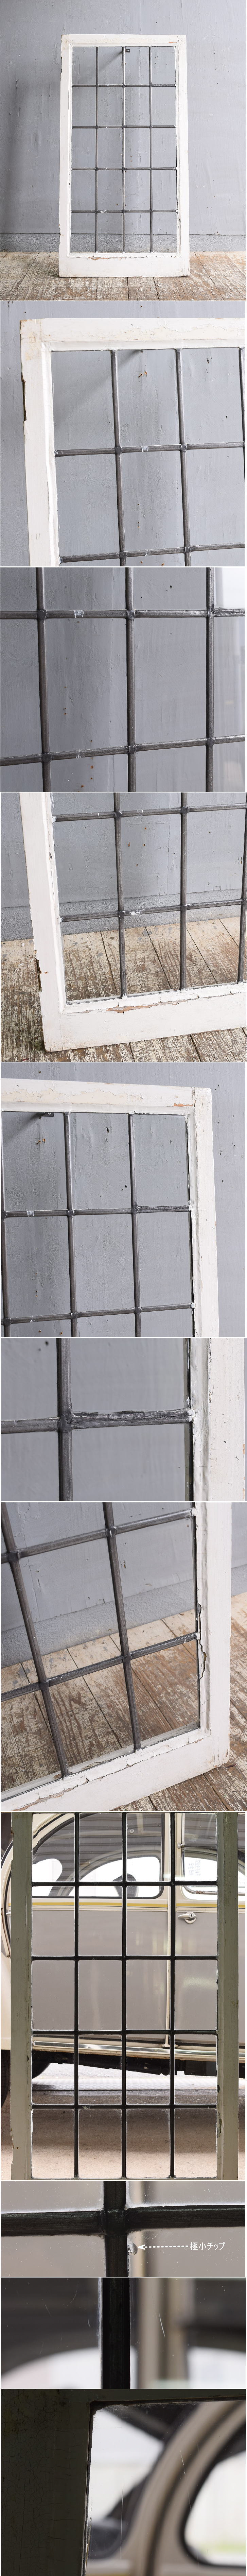 イギリス アンティーク 窓 無色透明 11757